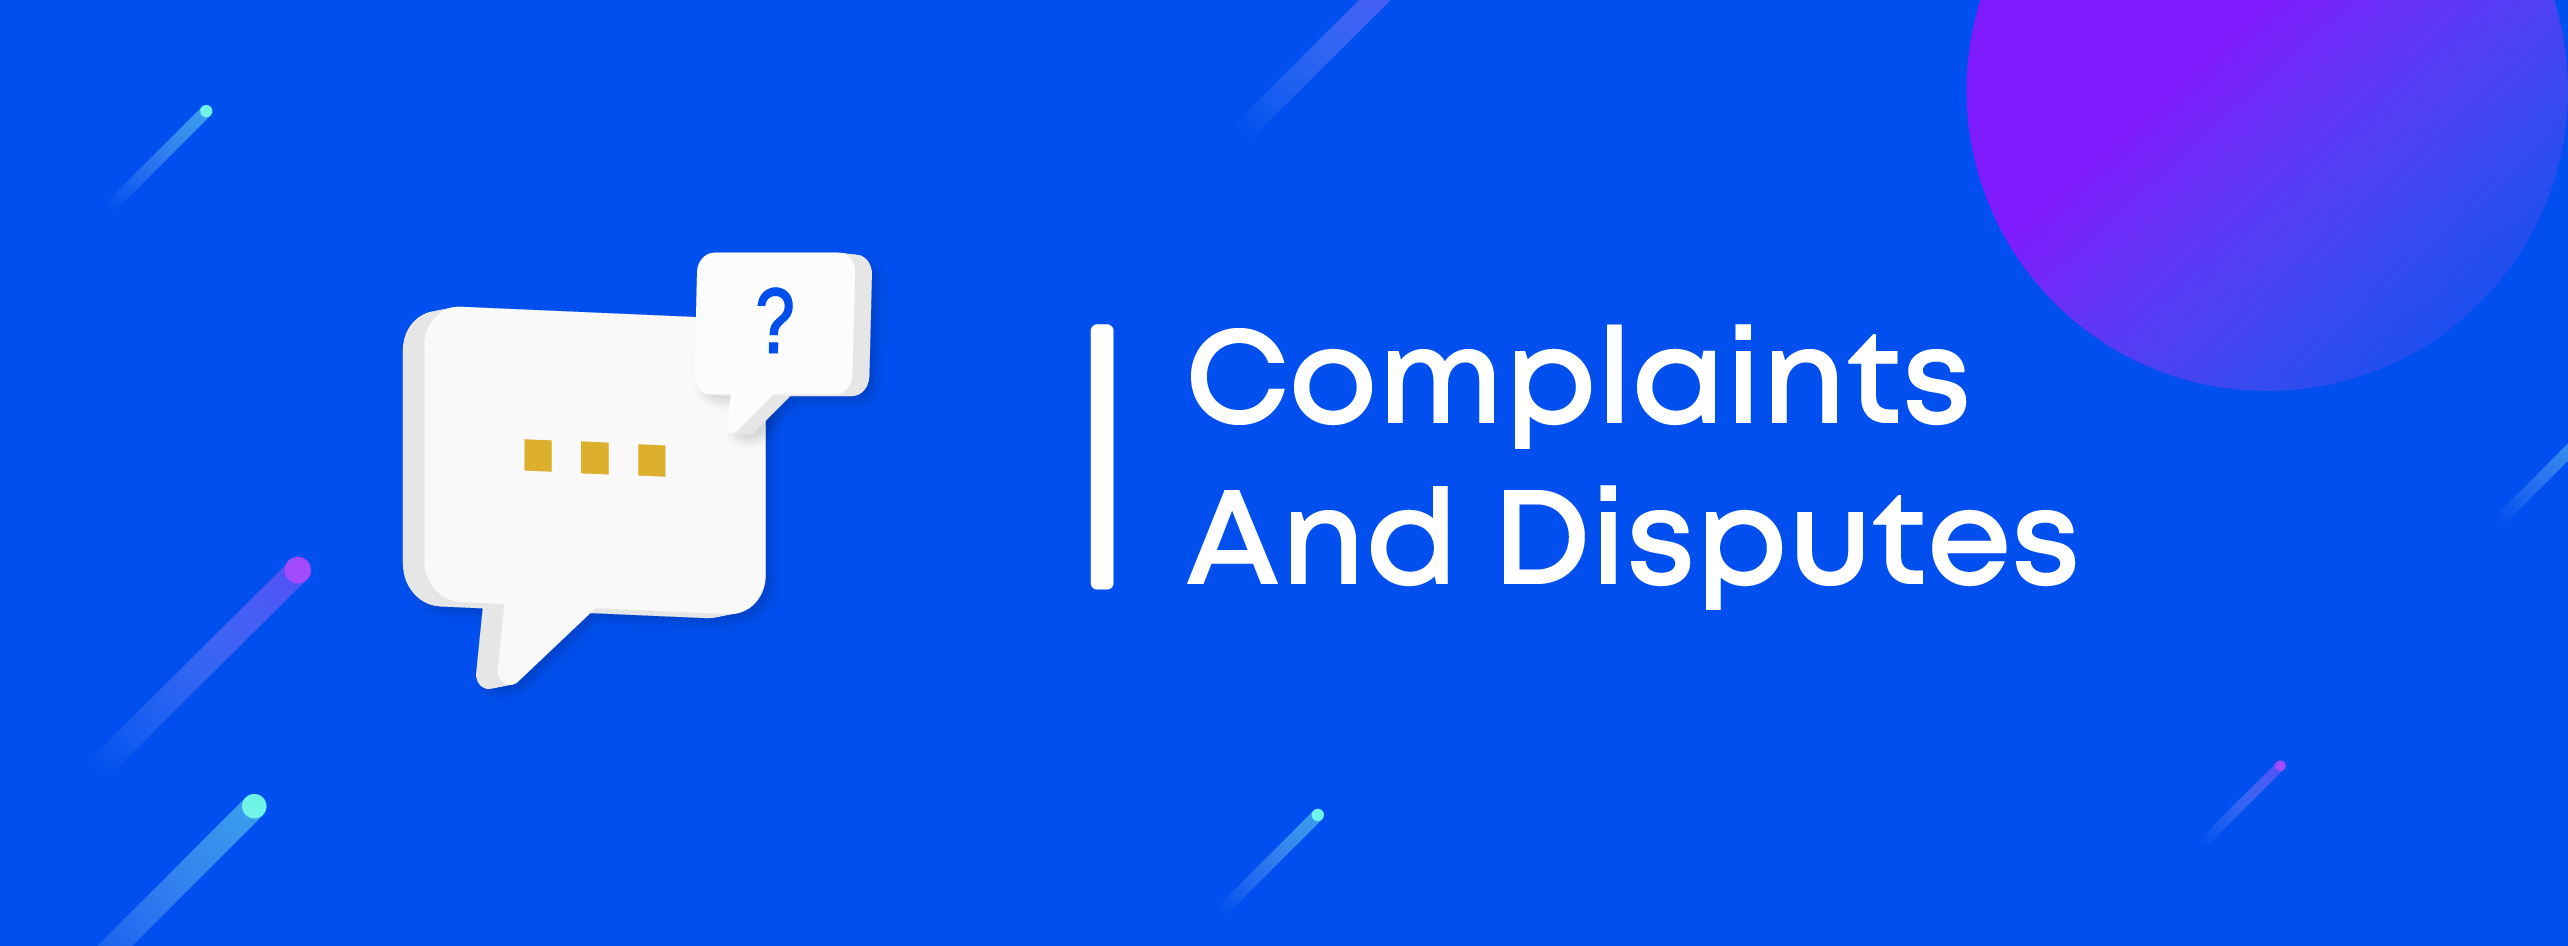 Complaints_Disputes.png